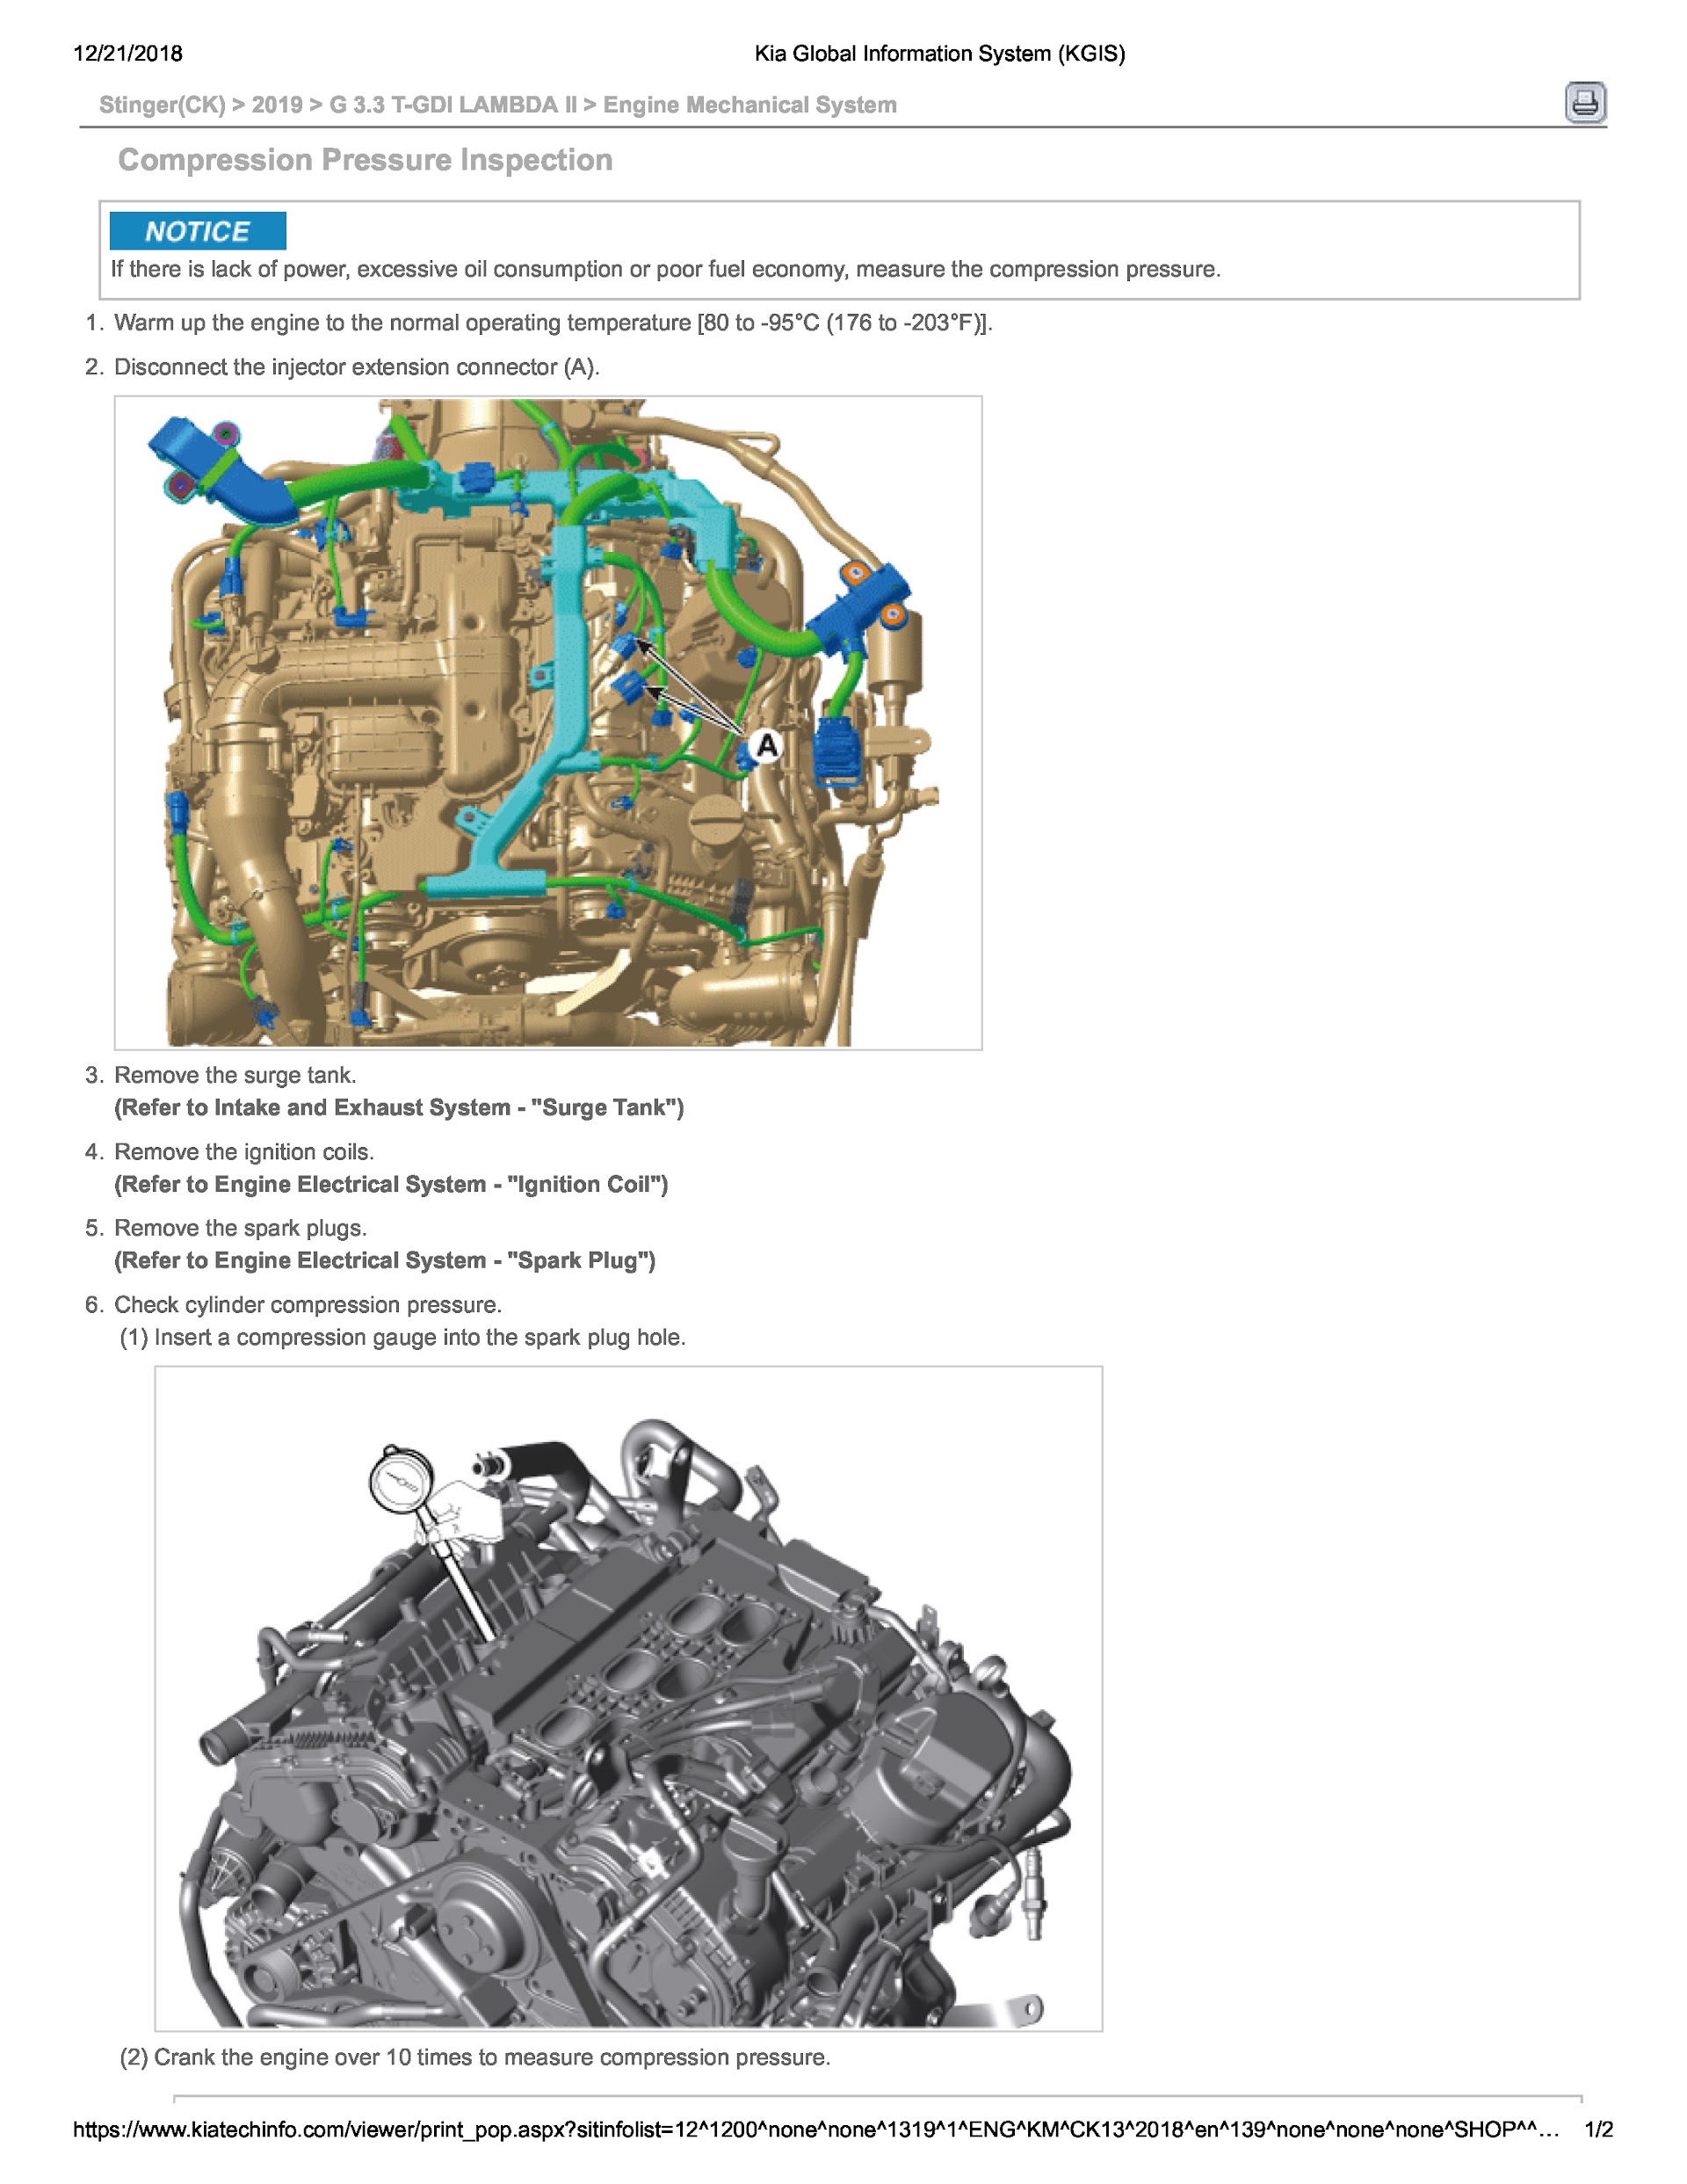 2019 Kia Stinger Repair Manual, Engine Mechanical System